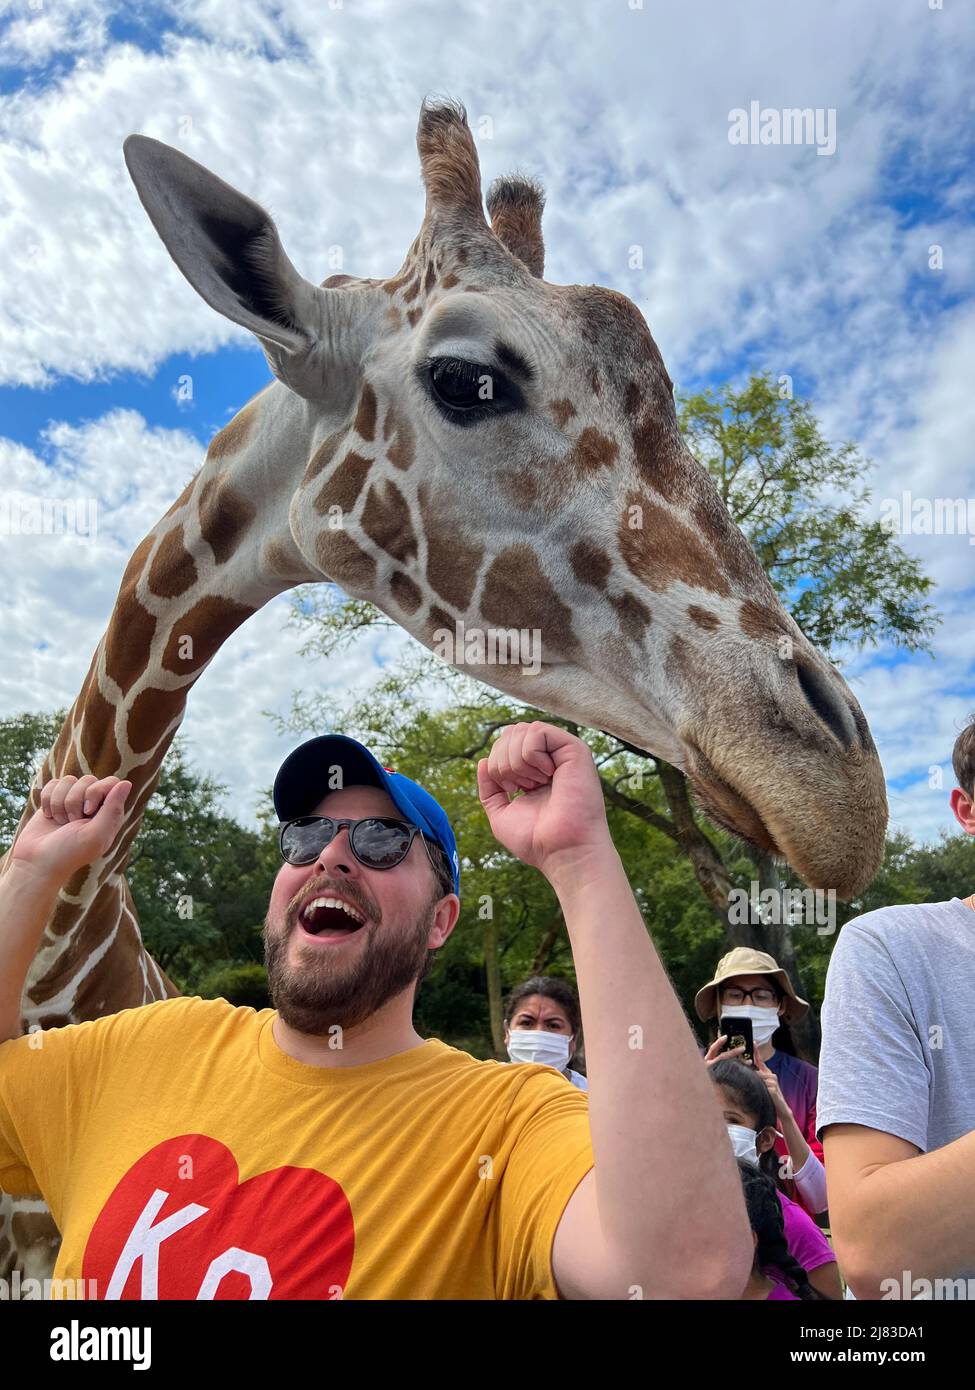 Tampa, FL USA - 11. November 2021: Eine Nahaufnahme einer Giraffe in einem Zoo, die darauf wartet, dass Besucher Salat füttern. Stockfoto